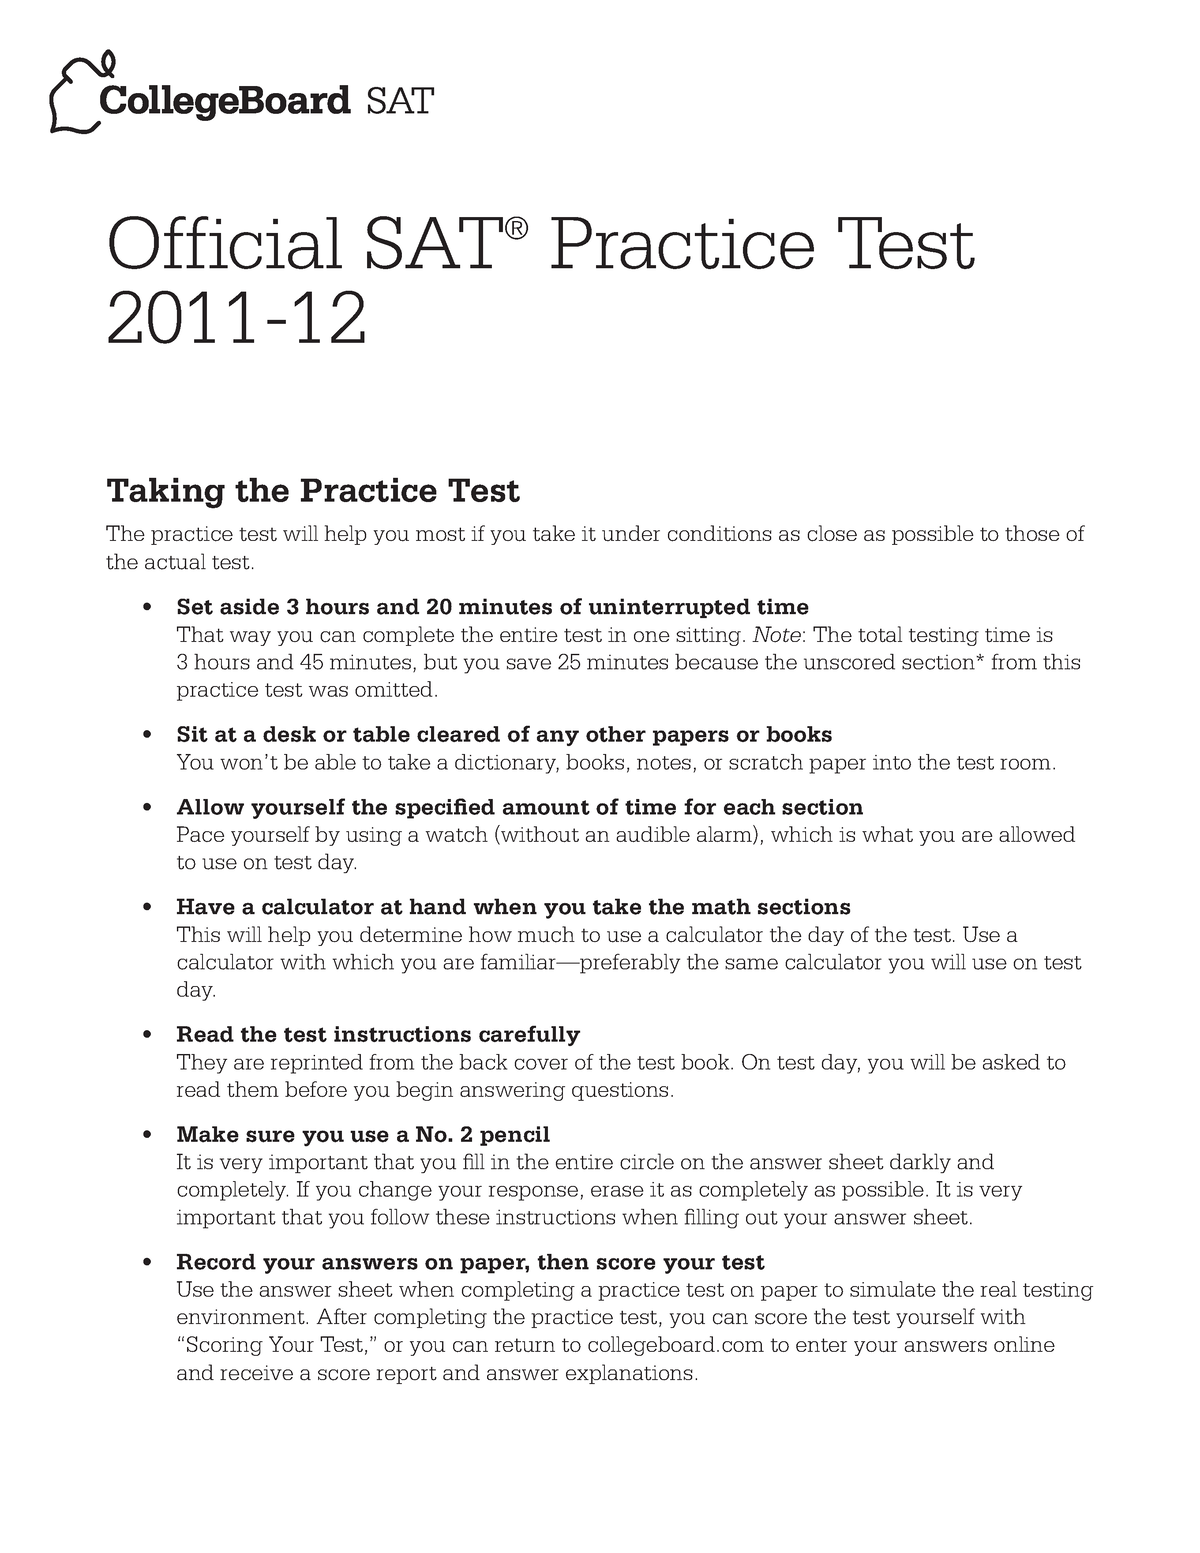 2011-12-sat-practice-test-official-sat-practice-test-2011-12